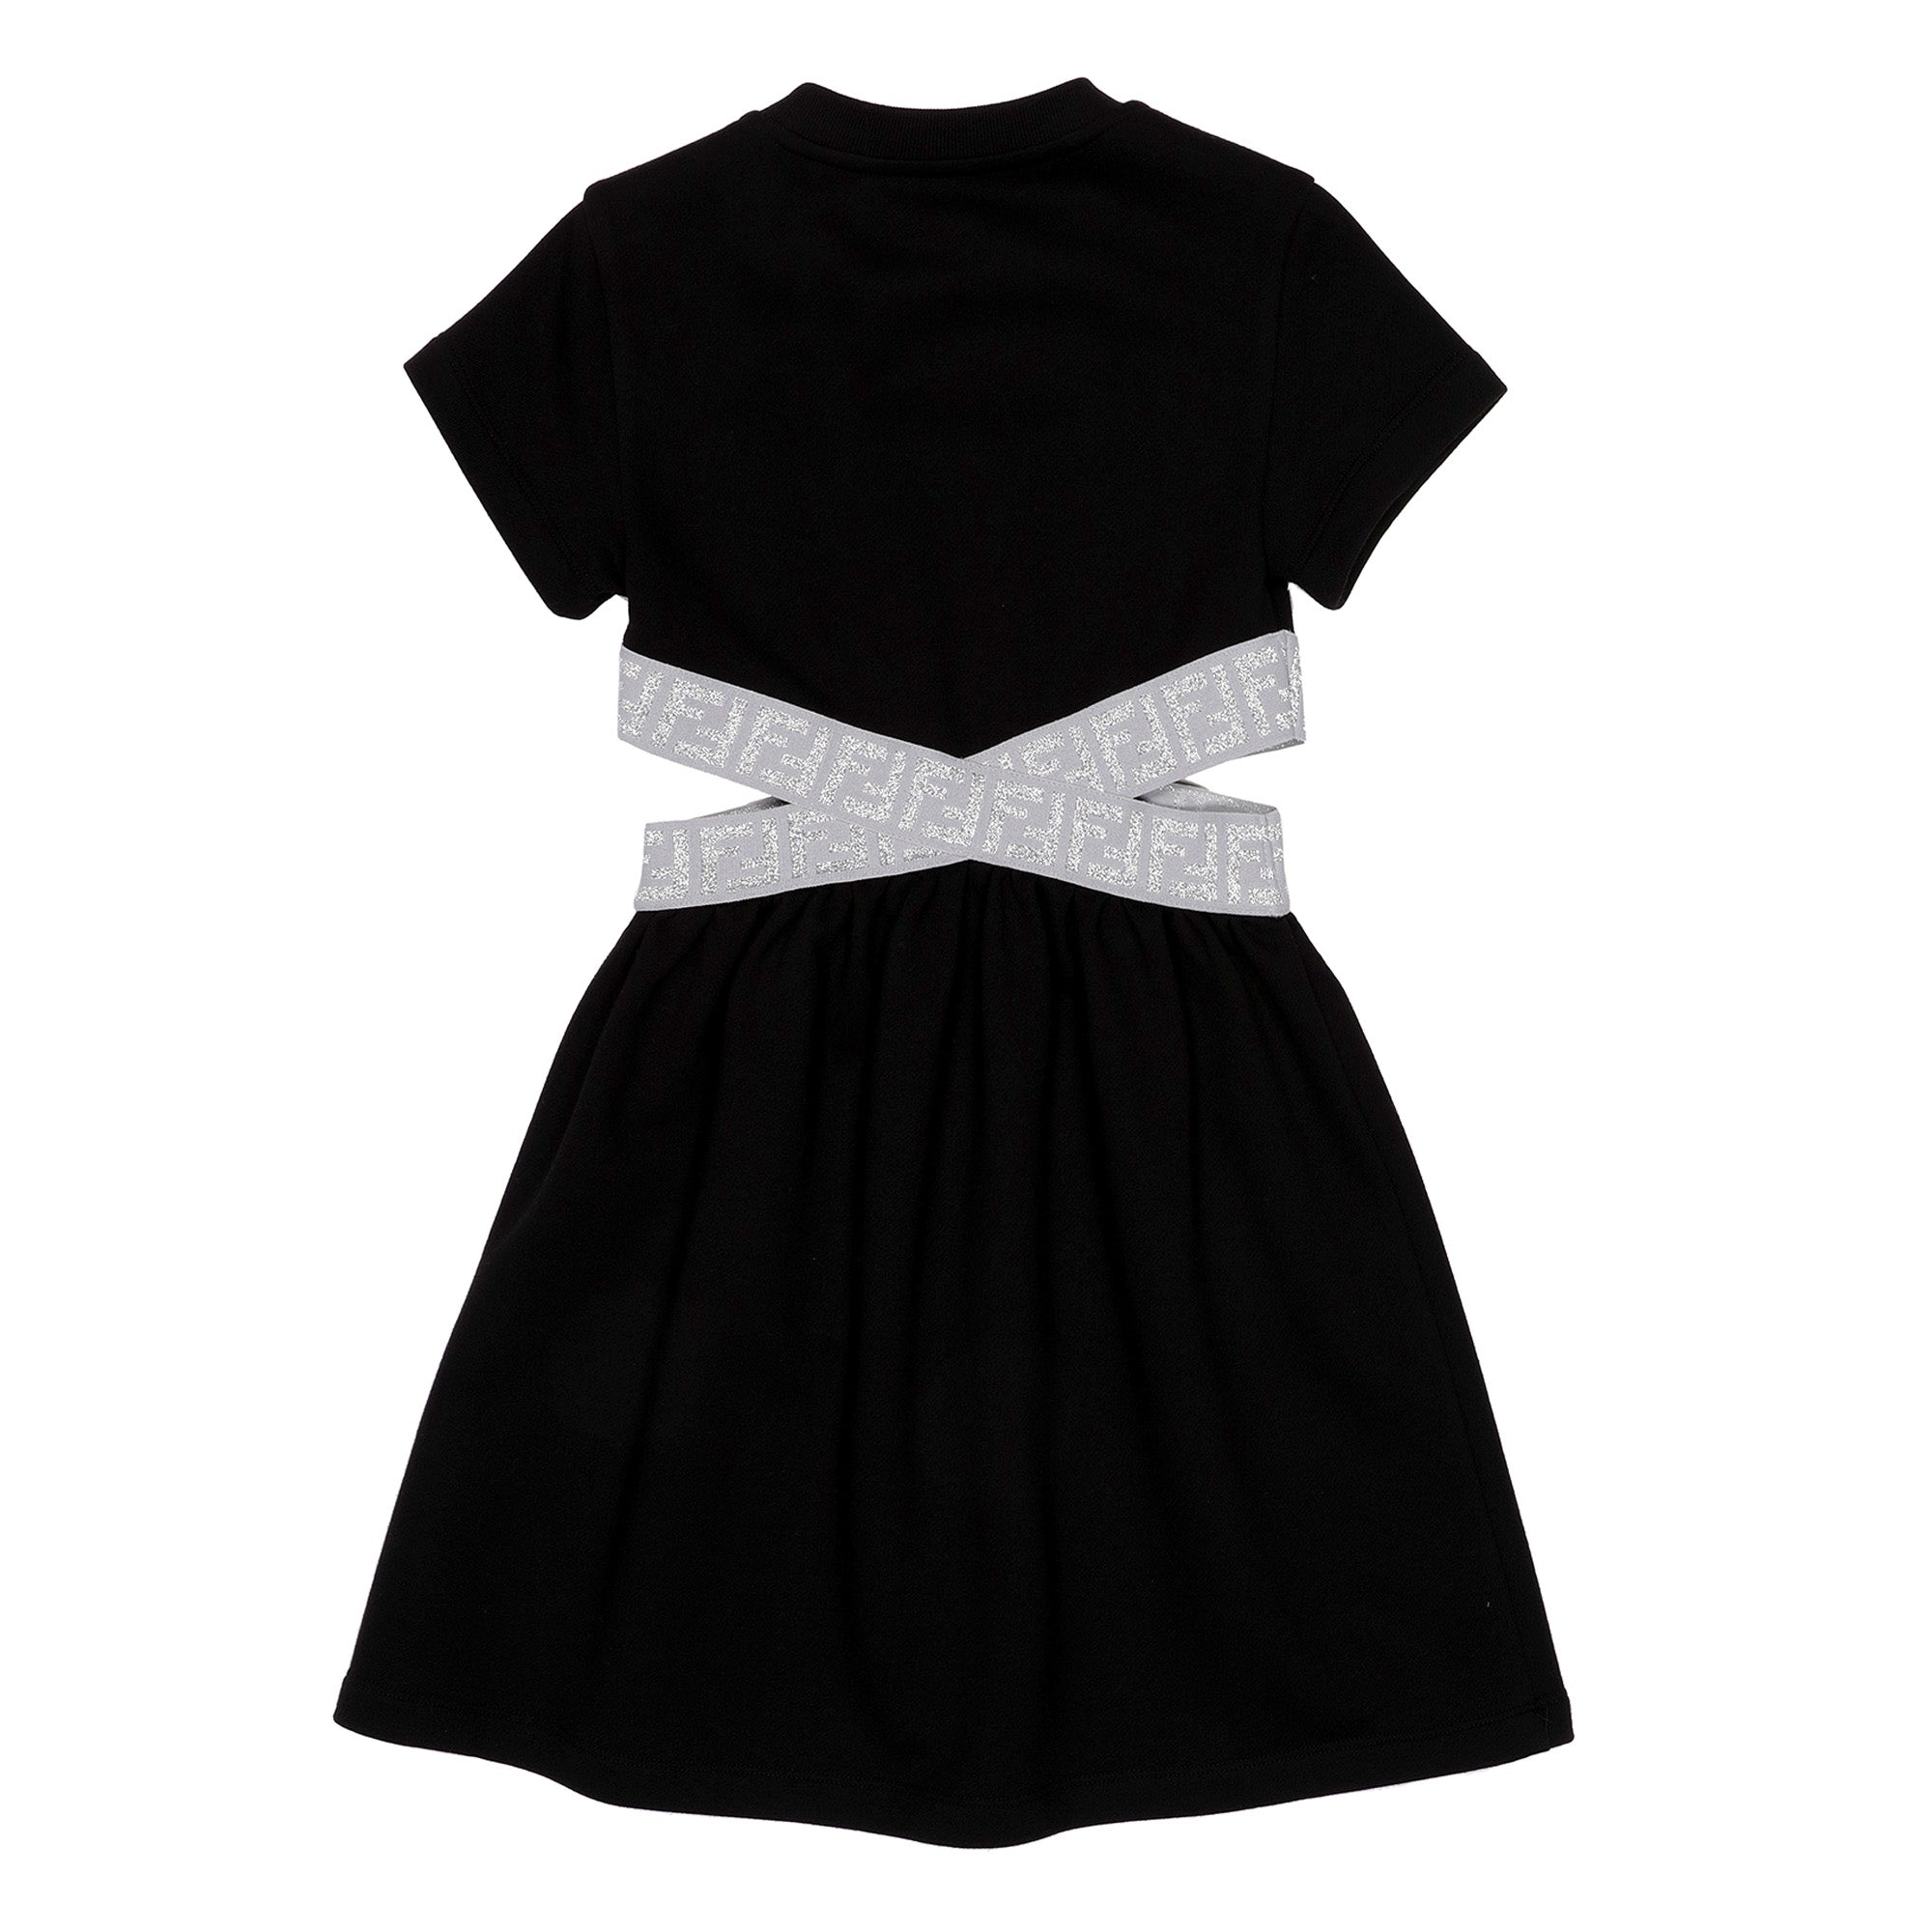 Fendi Black & Silver Cut-Out Dress